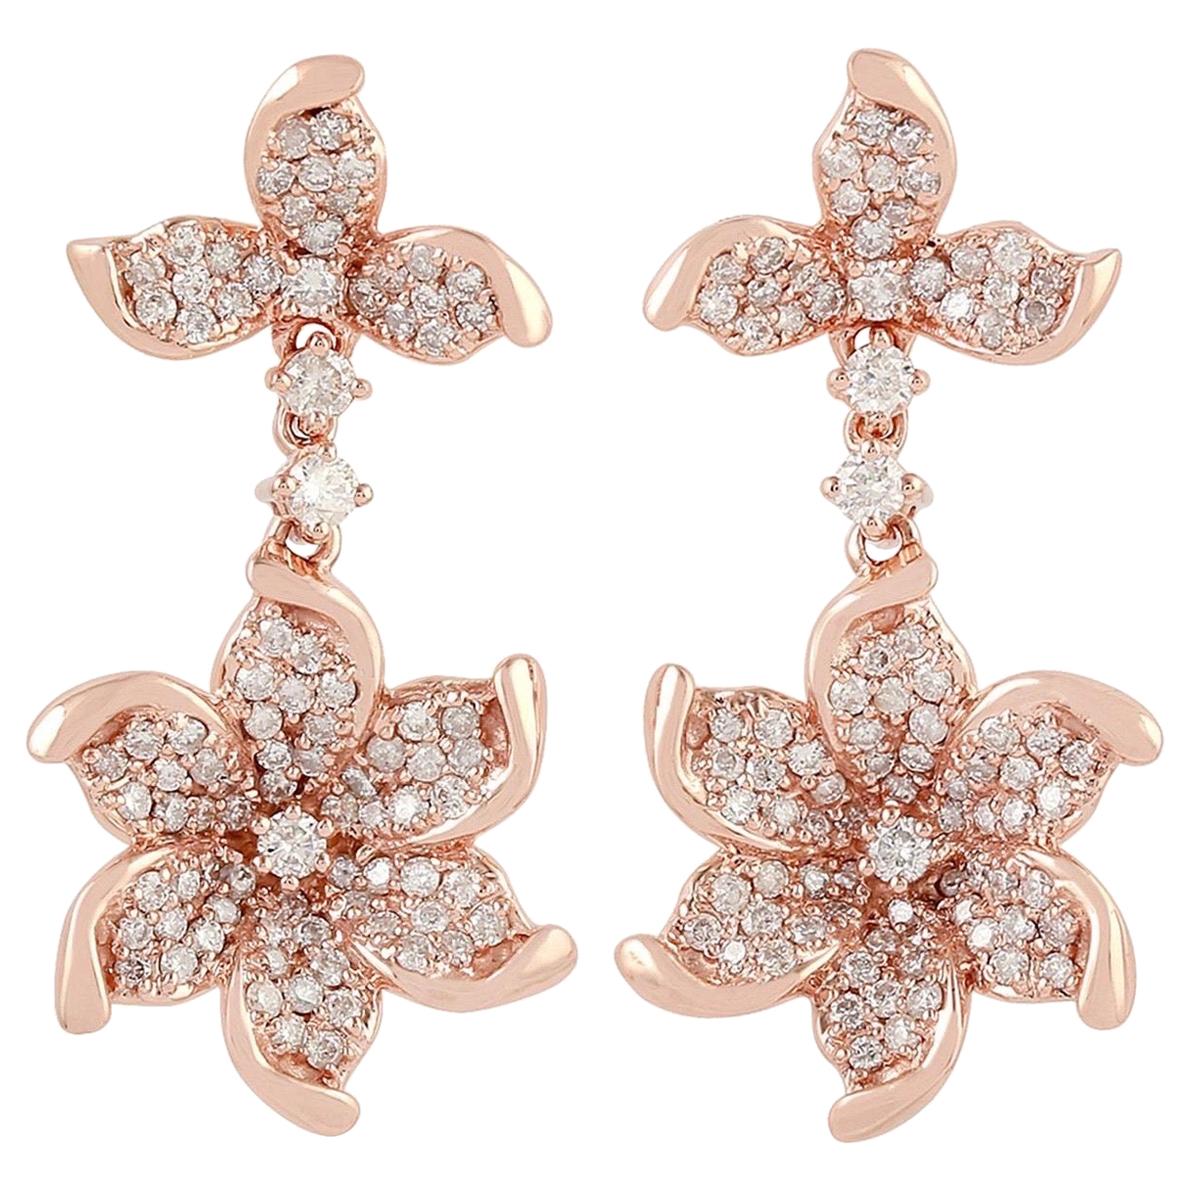 Bloom 18 Karat Gold Diamond Earrings